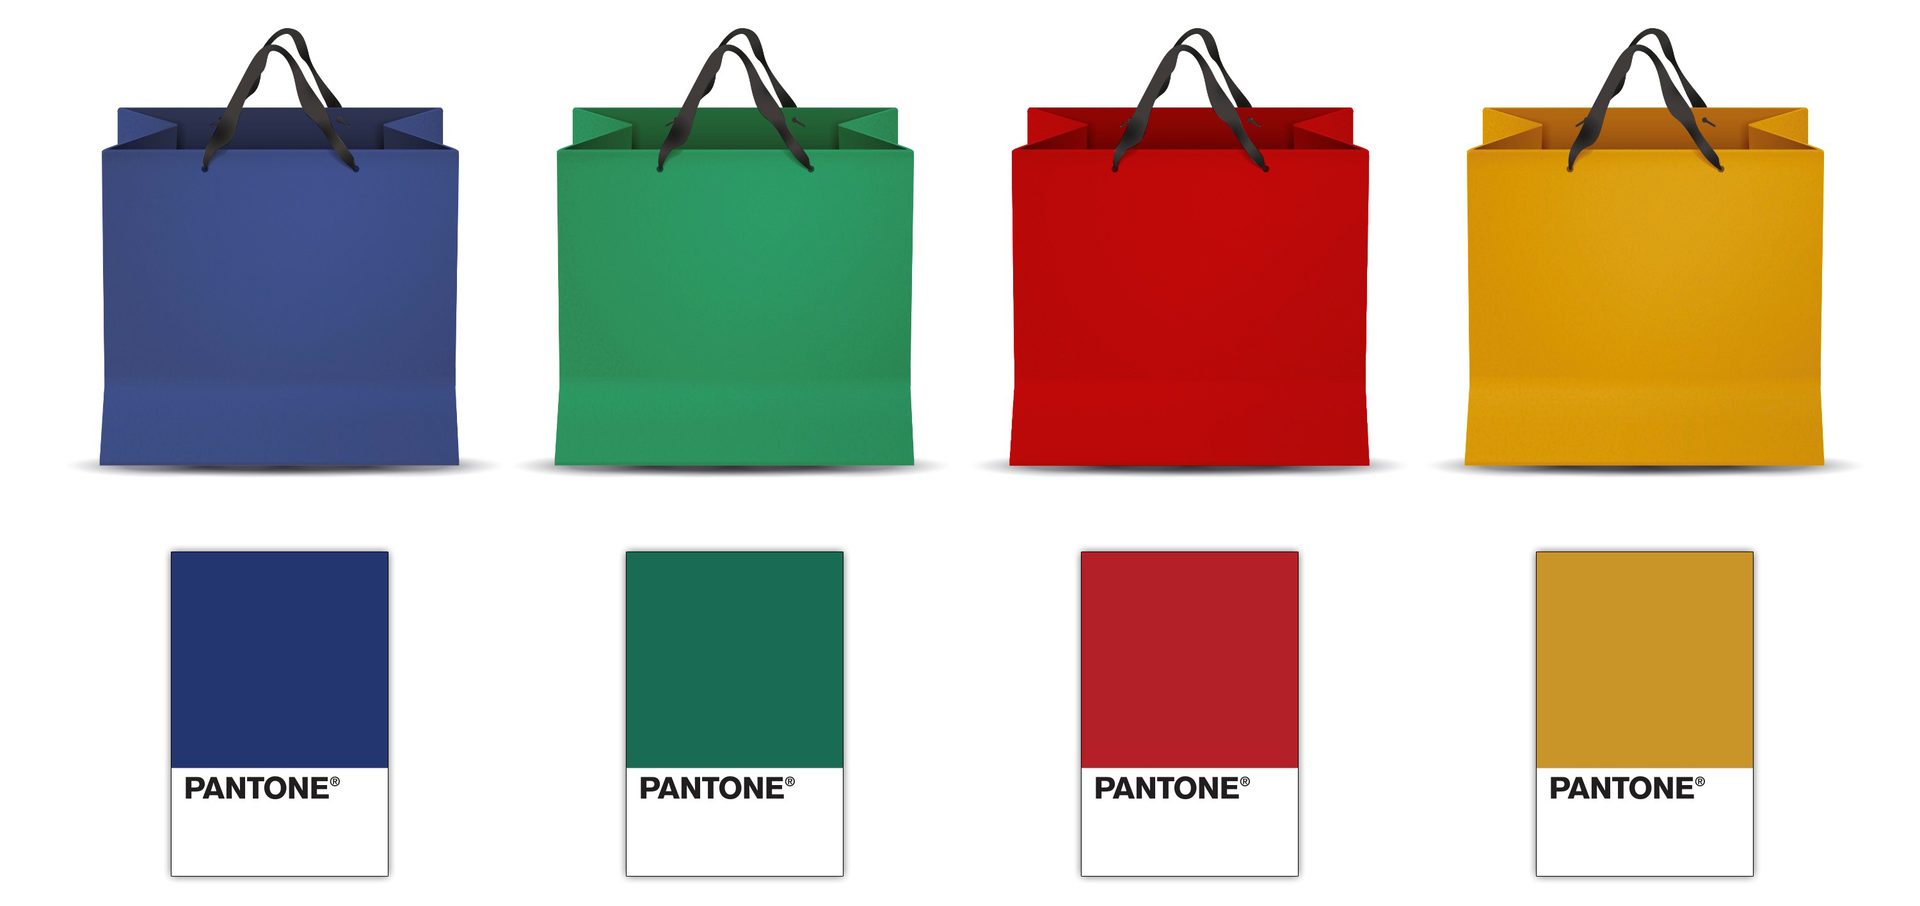 Pantone packaging library